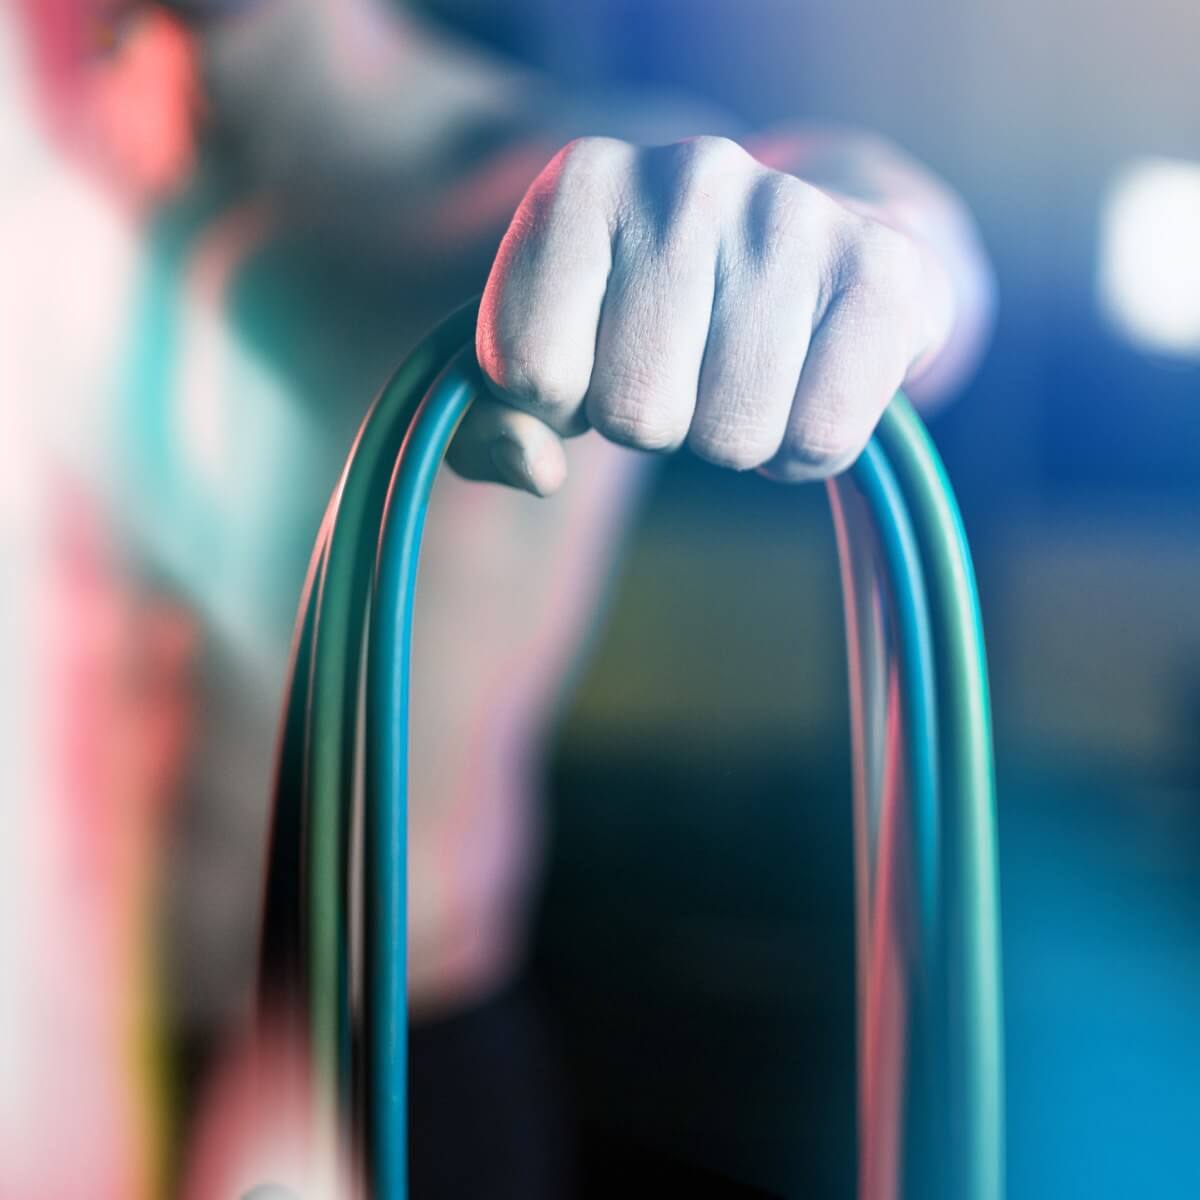 Køb resistance bands set 11 dele til styrketræning, fitness, yoga og pilates online hos Carerrelief.dk. Træning med elastikker styrker kroppens muskler og sener, så du kan forblive aktiv og smertefri.